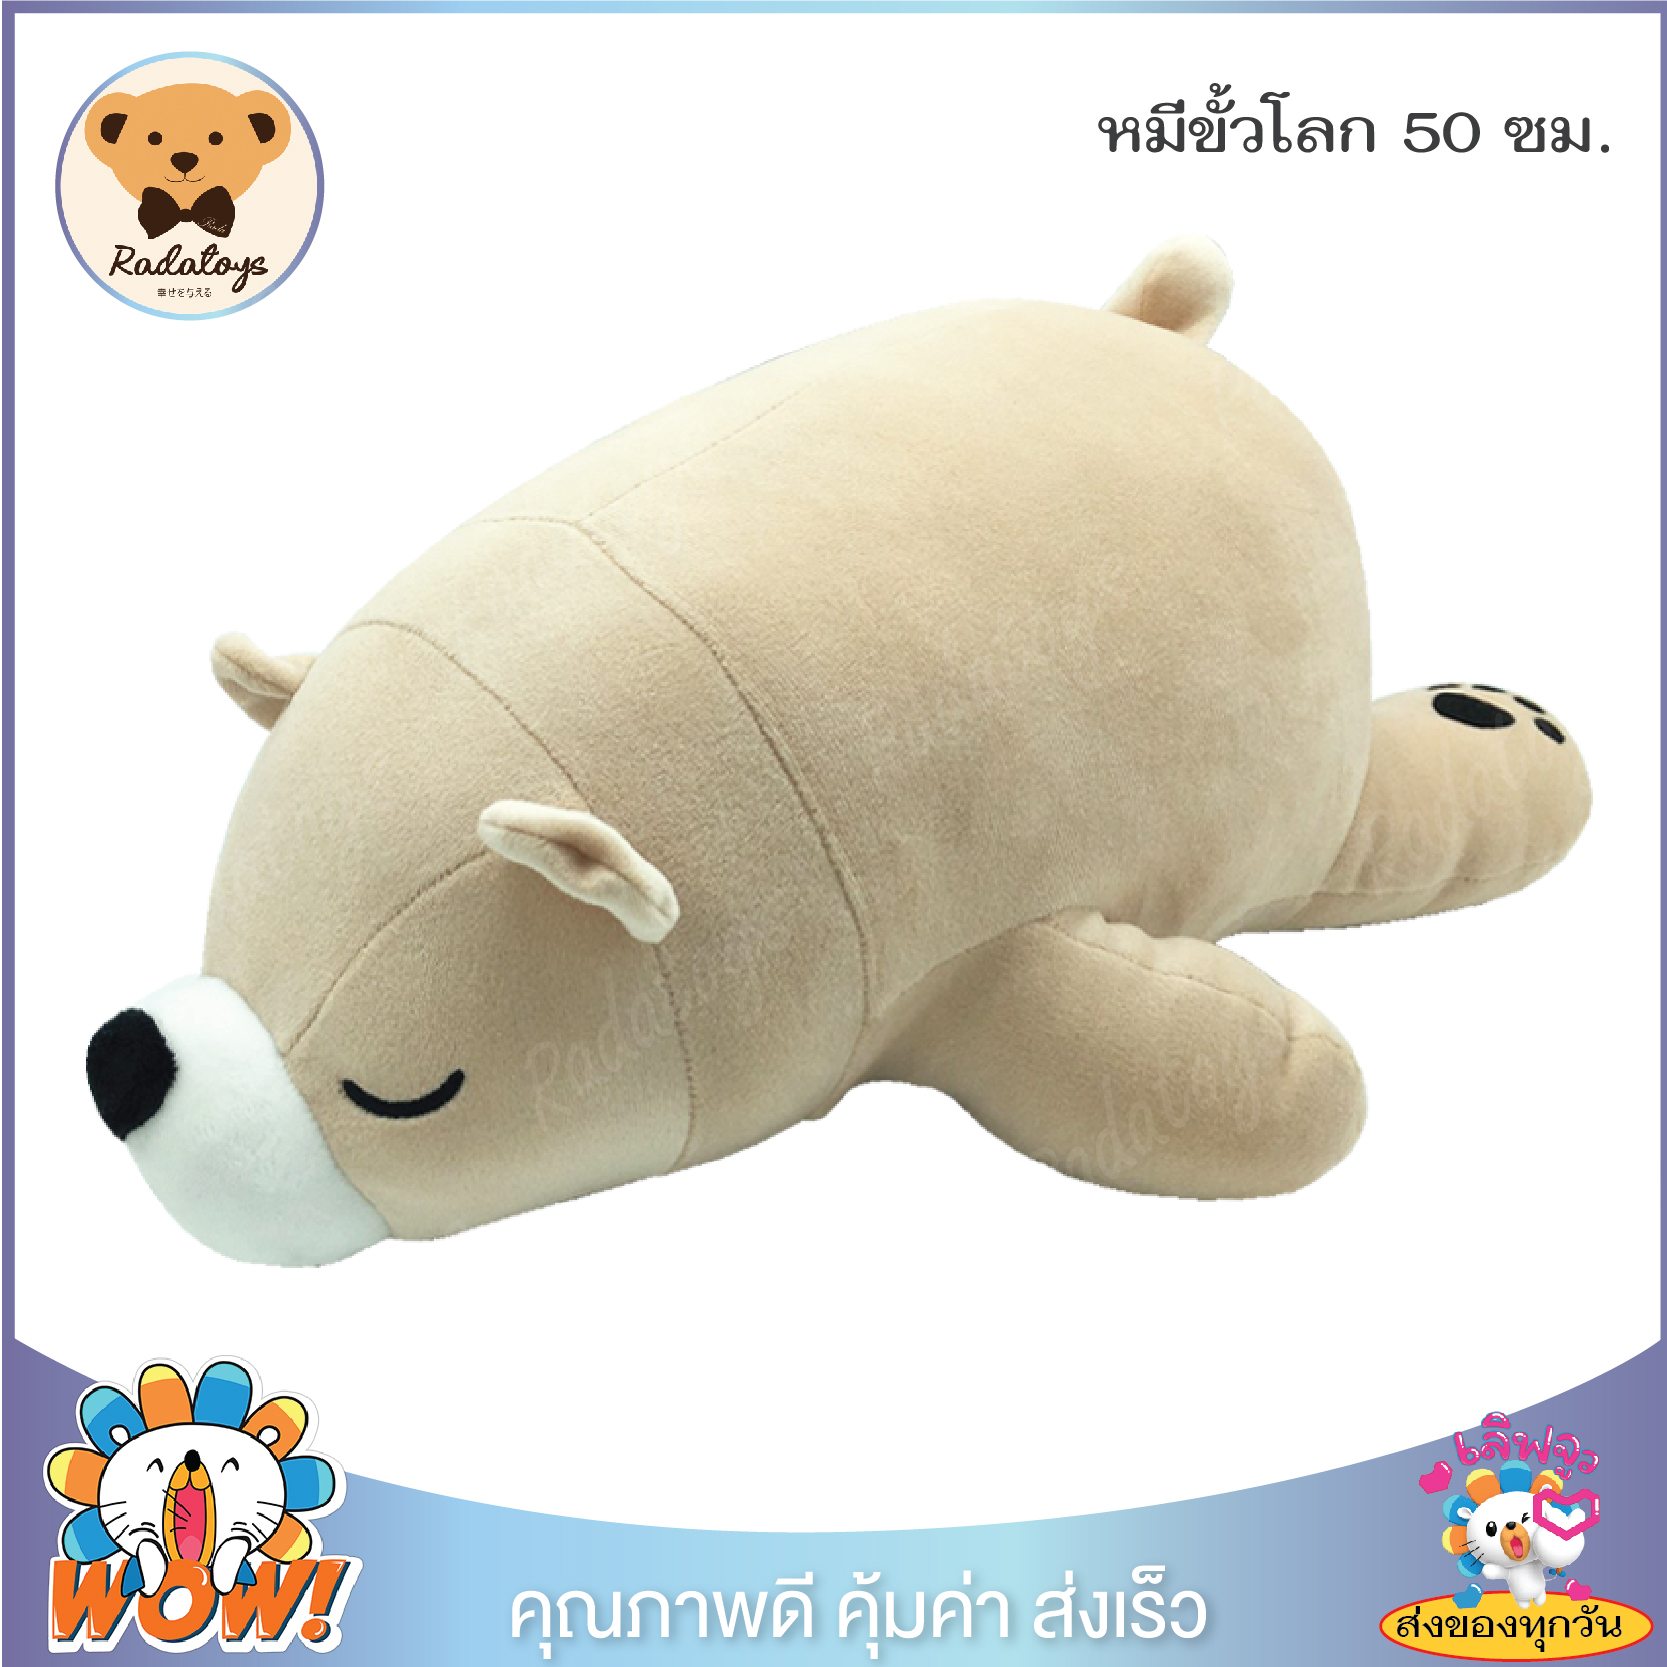 RadaToys ?ตุ๊กตาหมีขั้วโลก ตุ๊กตาหมีขี้เซา Sleepy Bear ขนาด 50 ซม. น่ารักน่ากอด ตัวนุ่มนิ่ม เส้นใยไมโคร เกรด A ผ้านุ่มมาก ผลิตในประเทศไทย